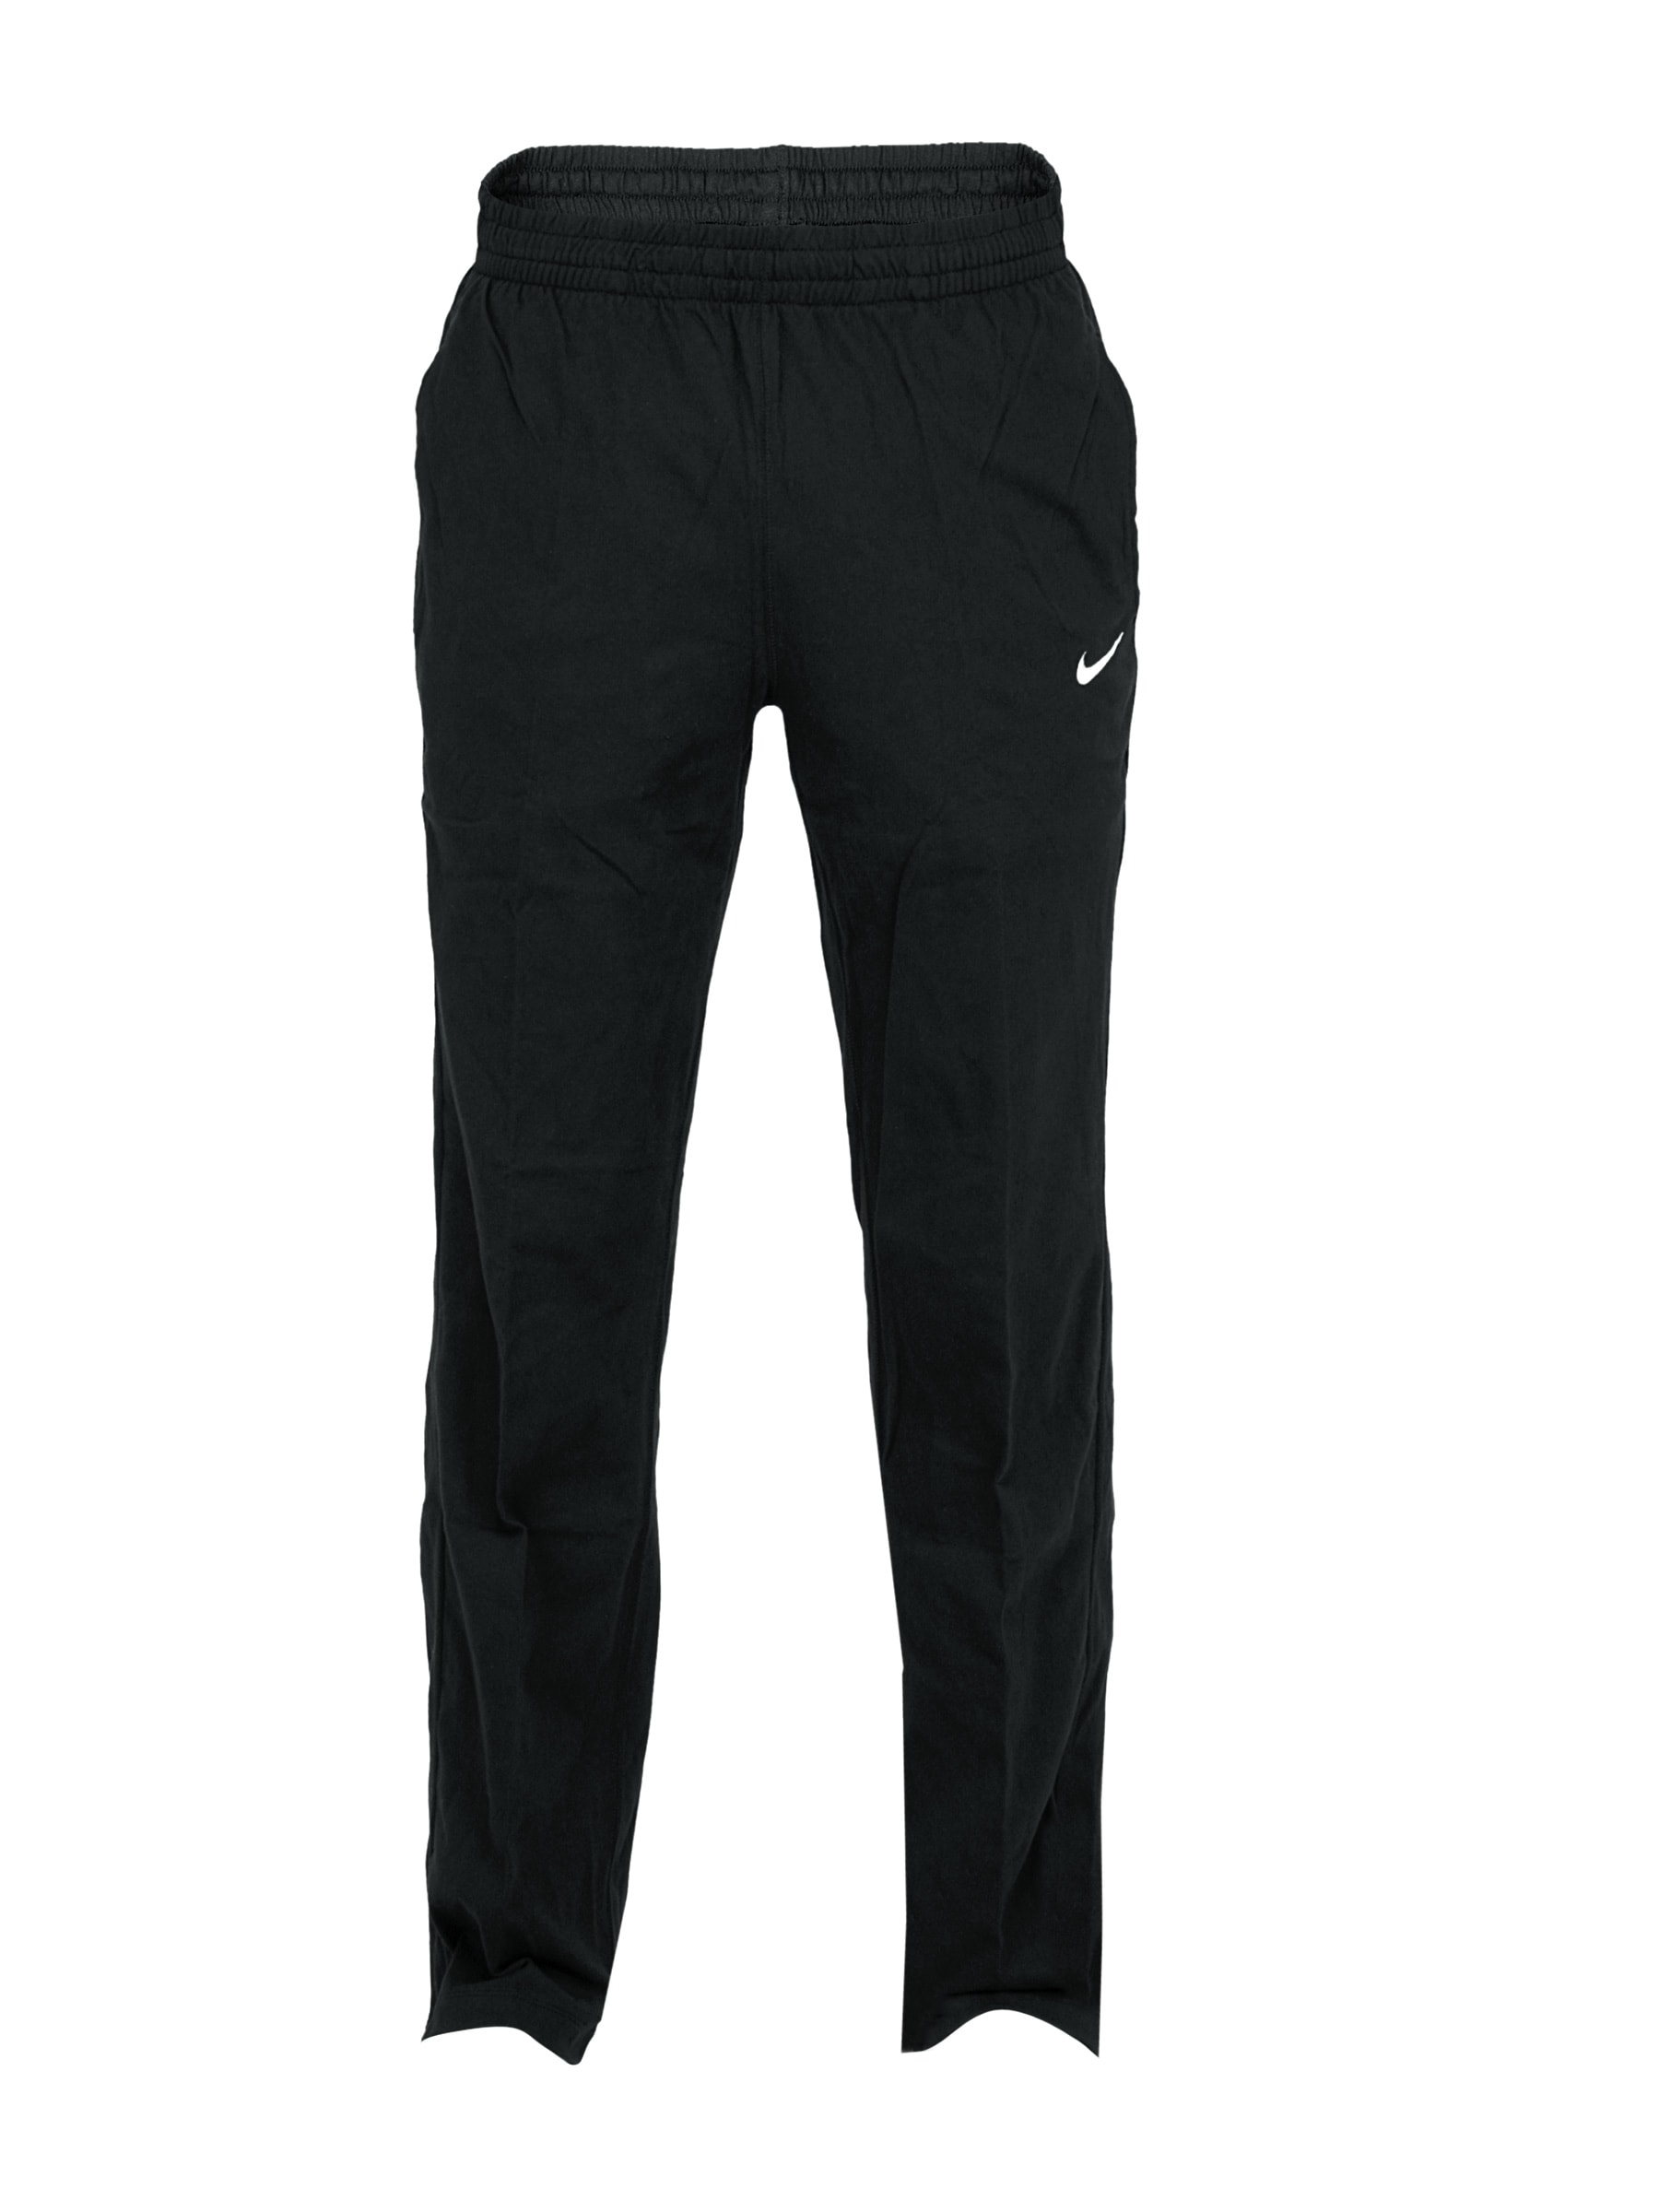 Nike Men AD Breakline OH Black Track Pants